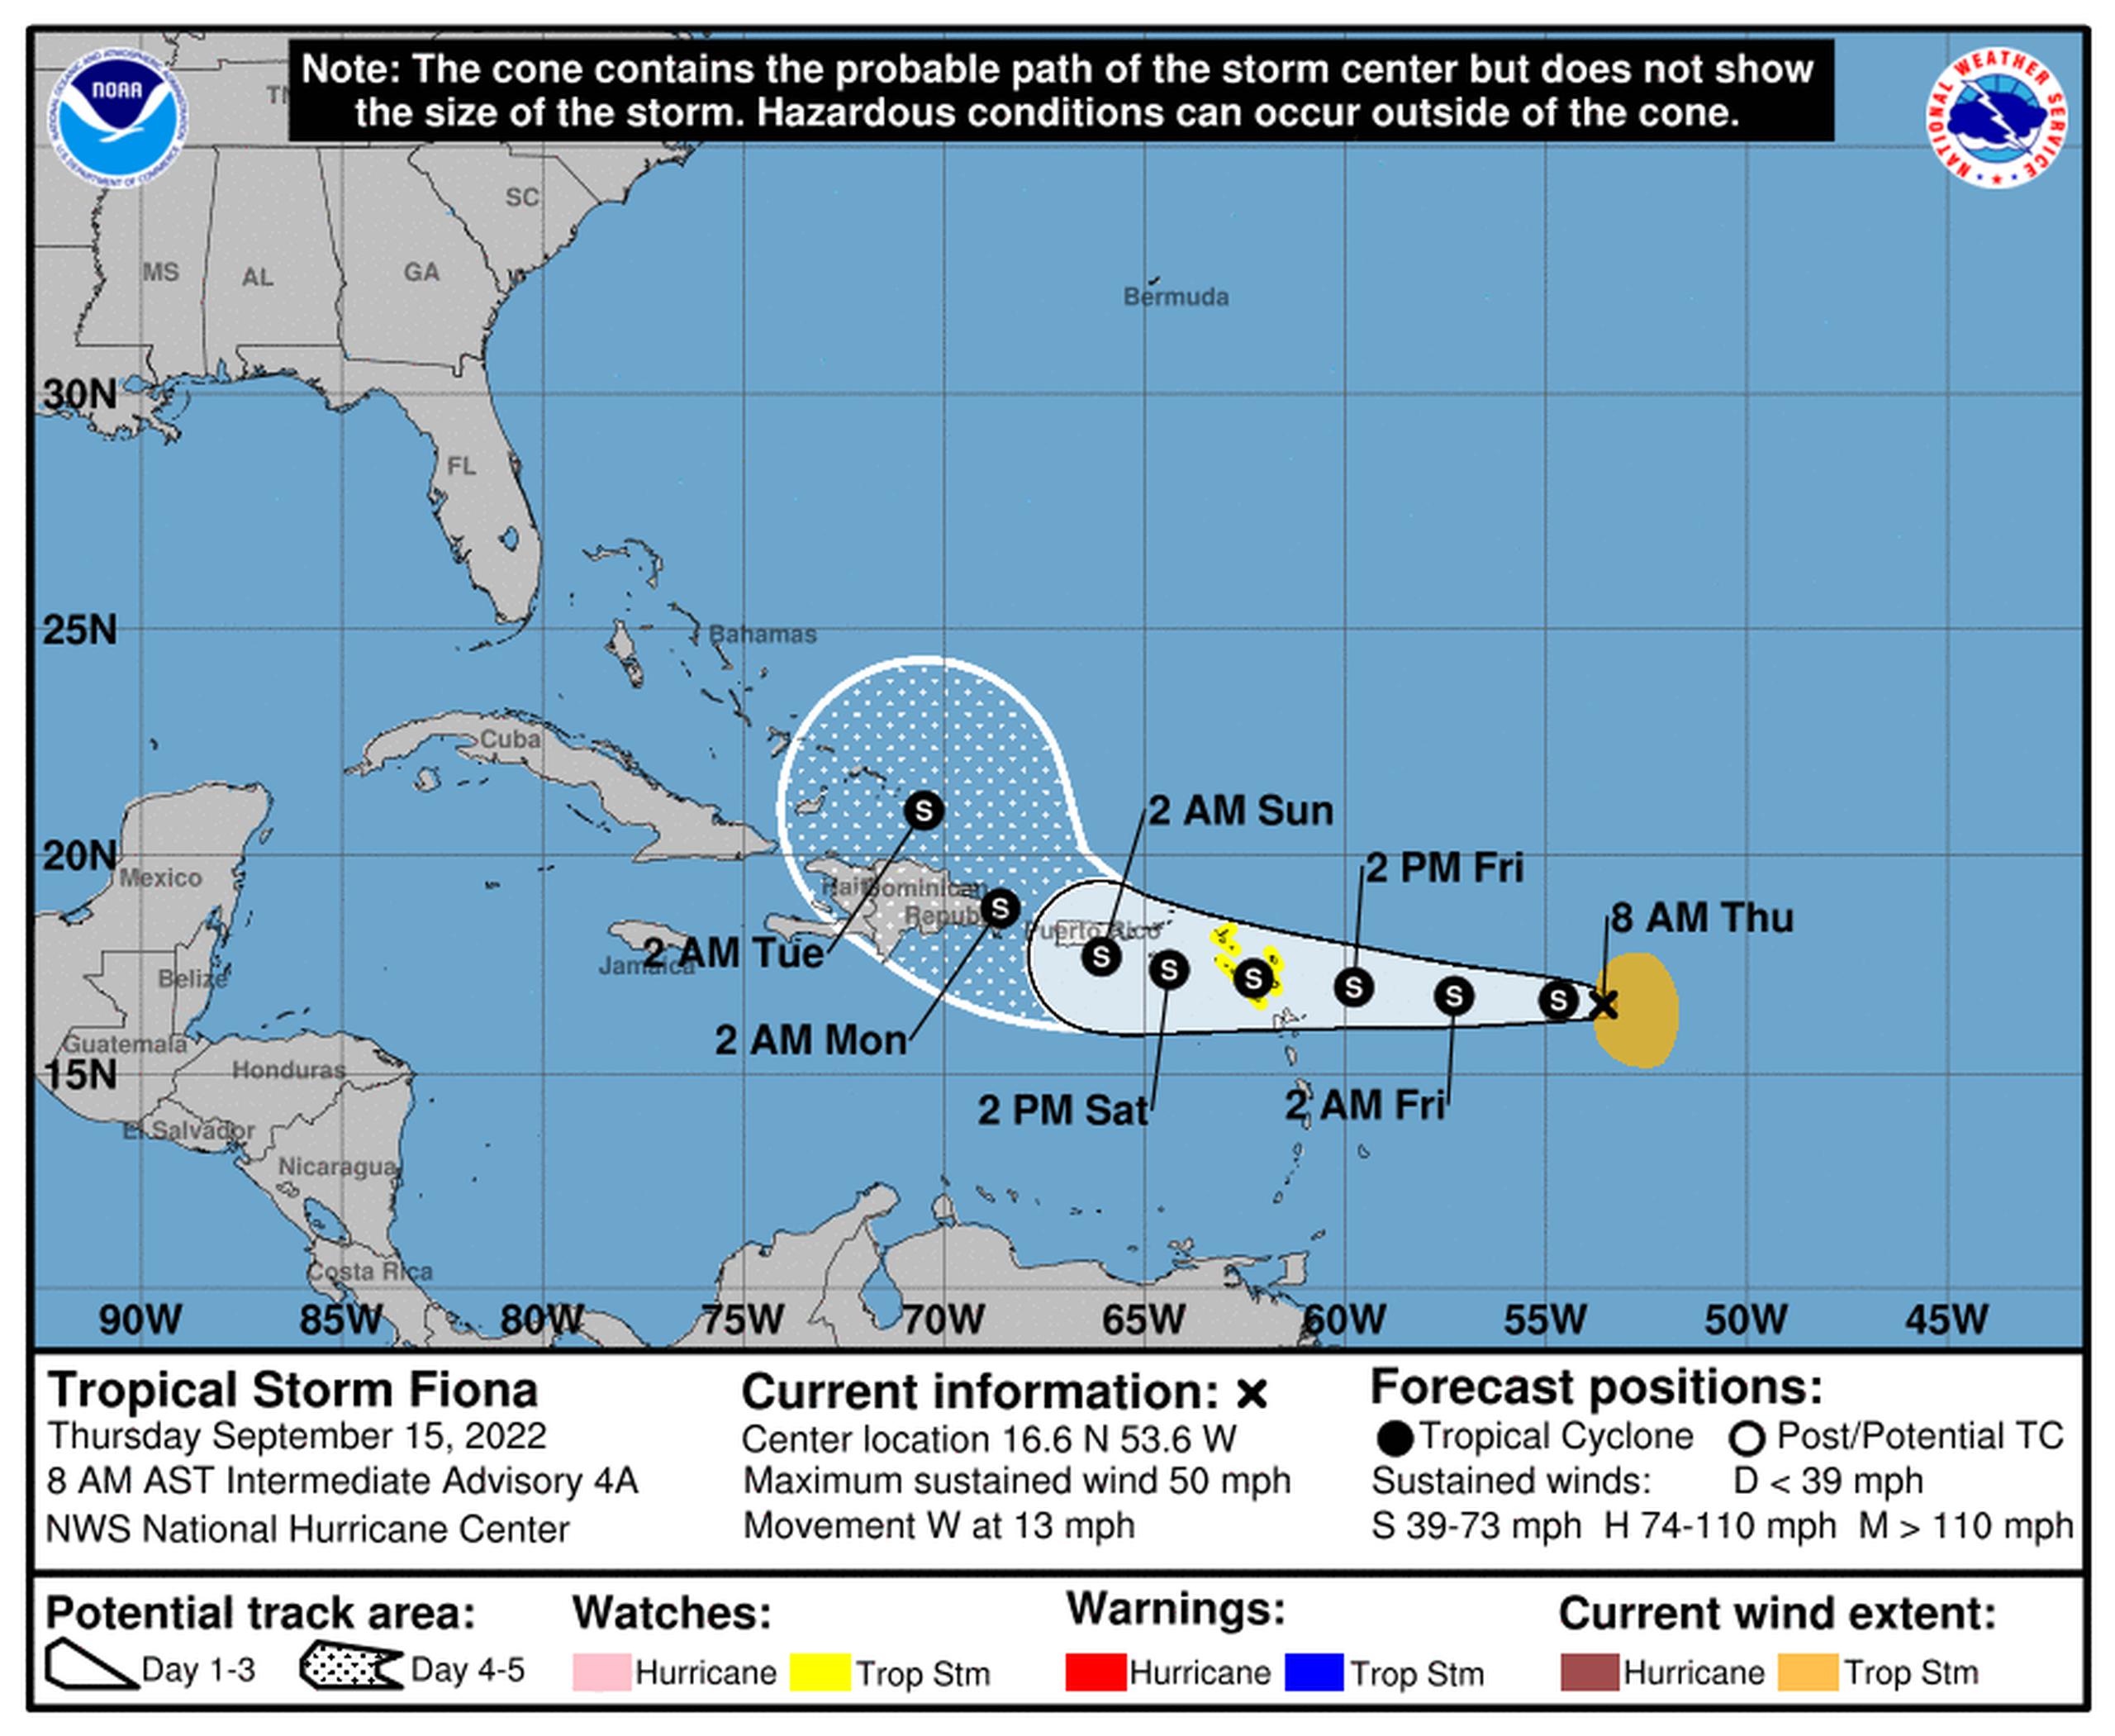 Pronóstico de la tormenta tropical Fiona emitido a las 8:00 de la mañana del 15 de septiembre de 2022.